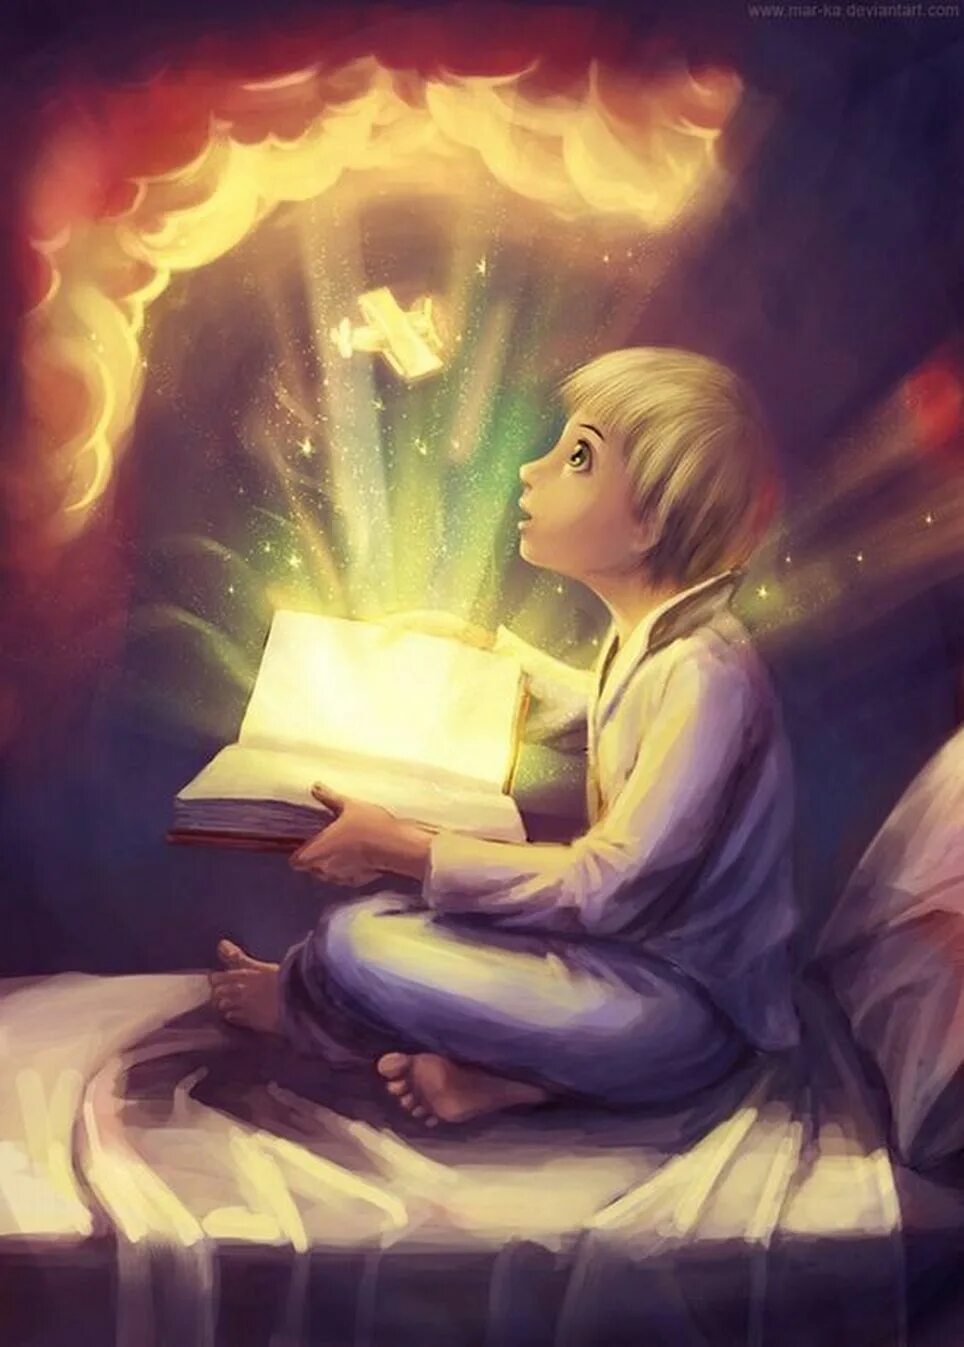 Magic читать. Волшебная книга. Книга арт. Волшебство чтения. Книжные арты.